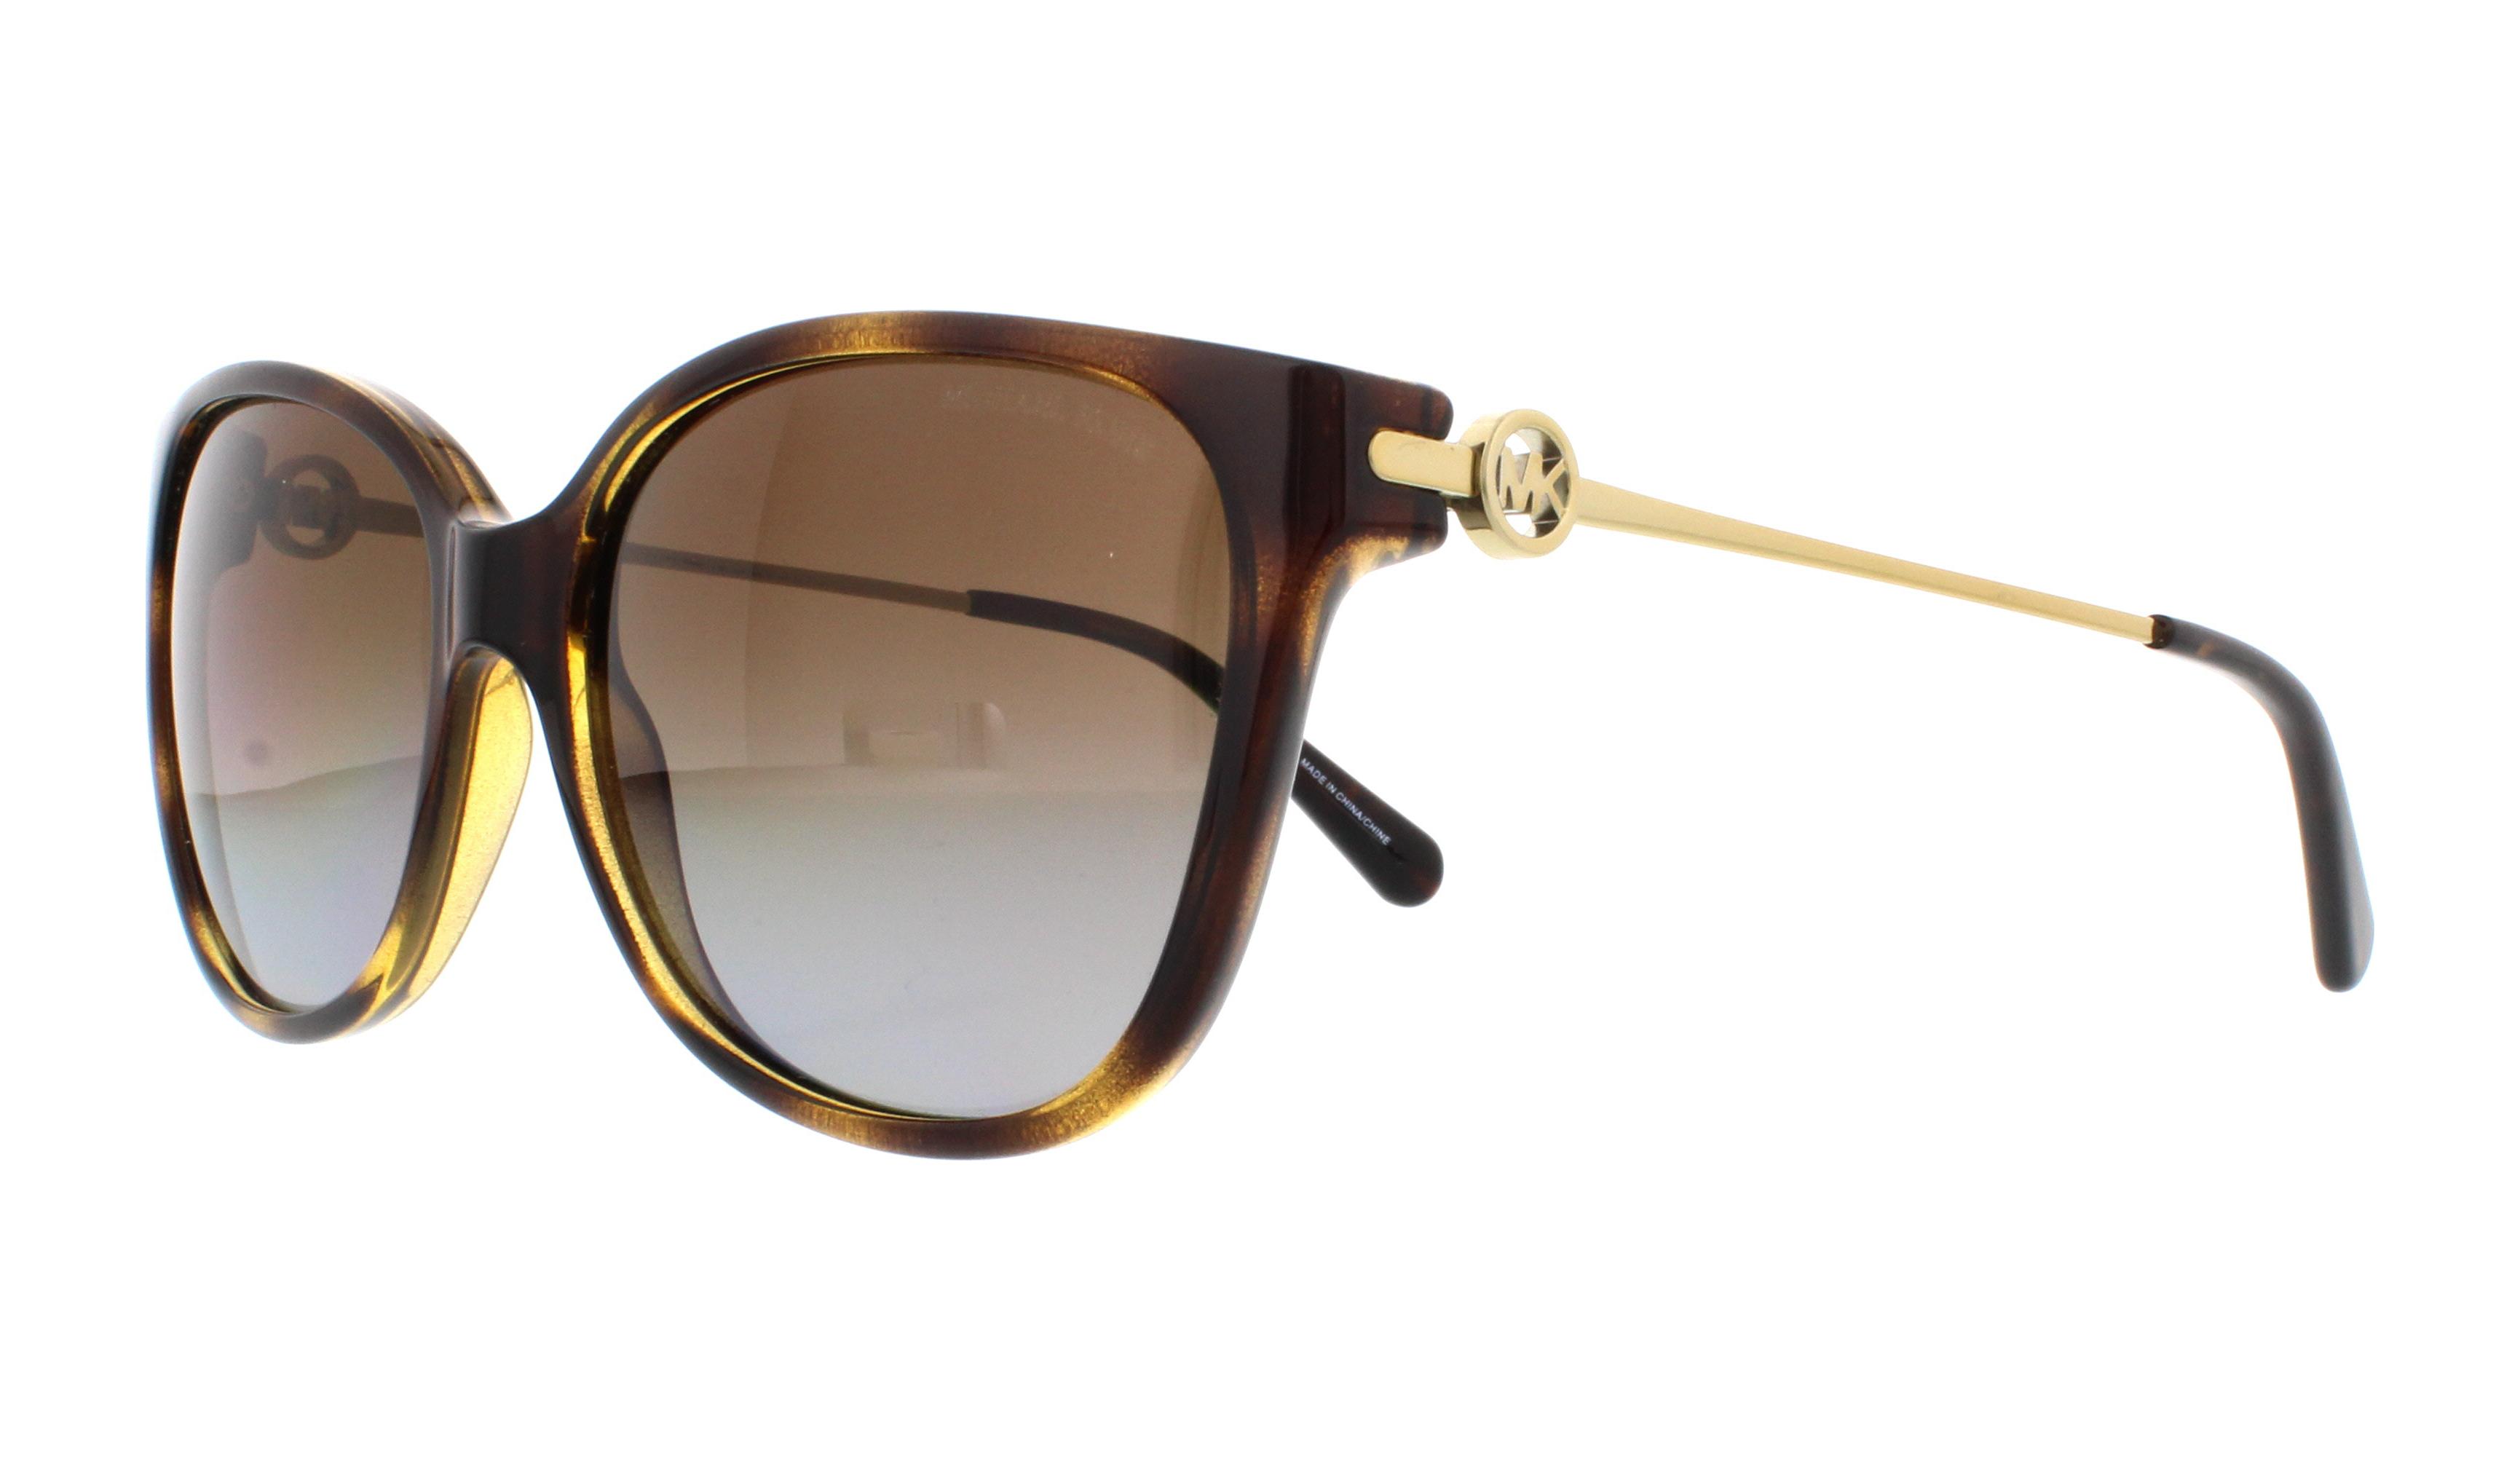 Designer Frames Outlet. Michael Kors Sunglasses MK6006 Marrakesh